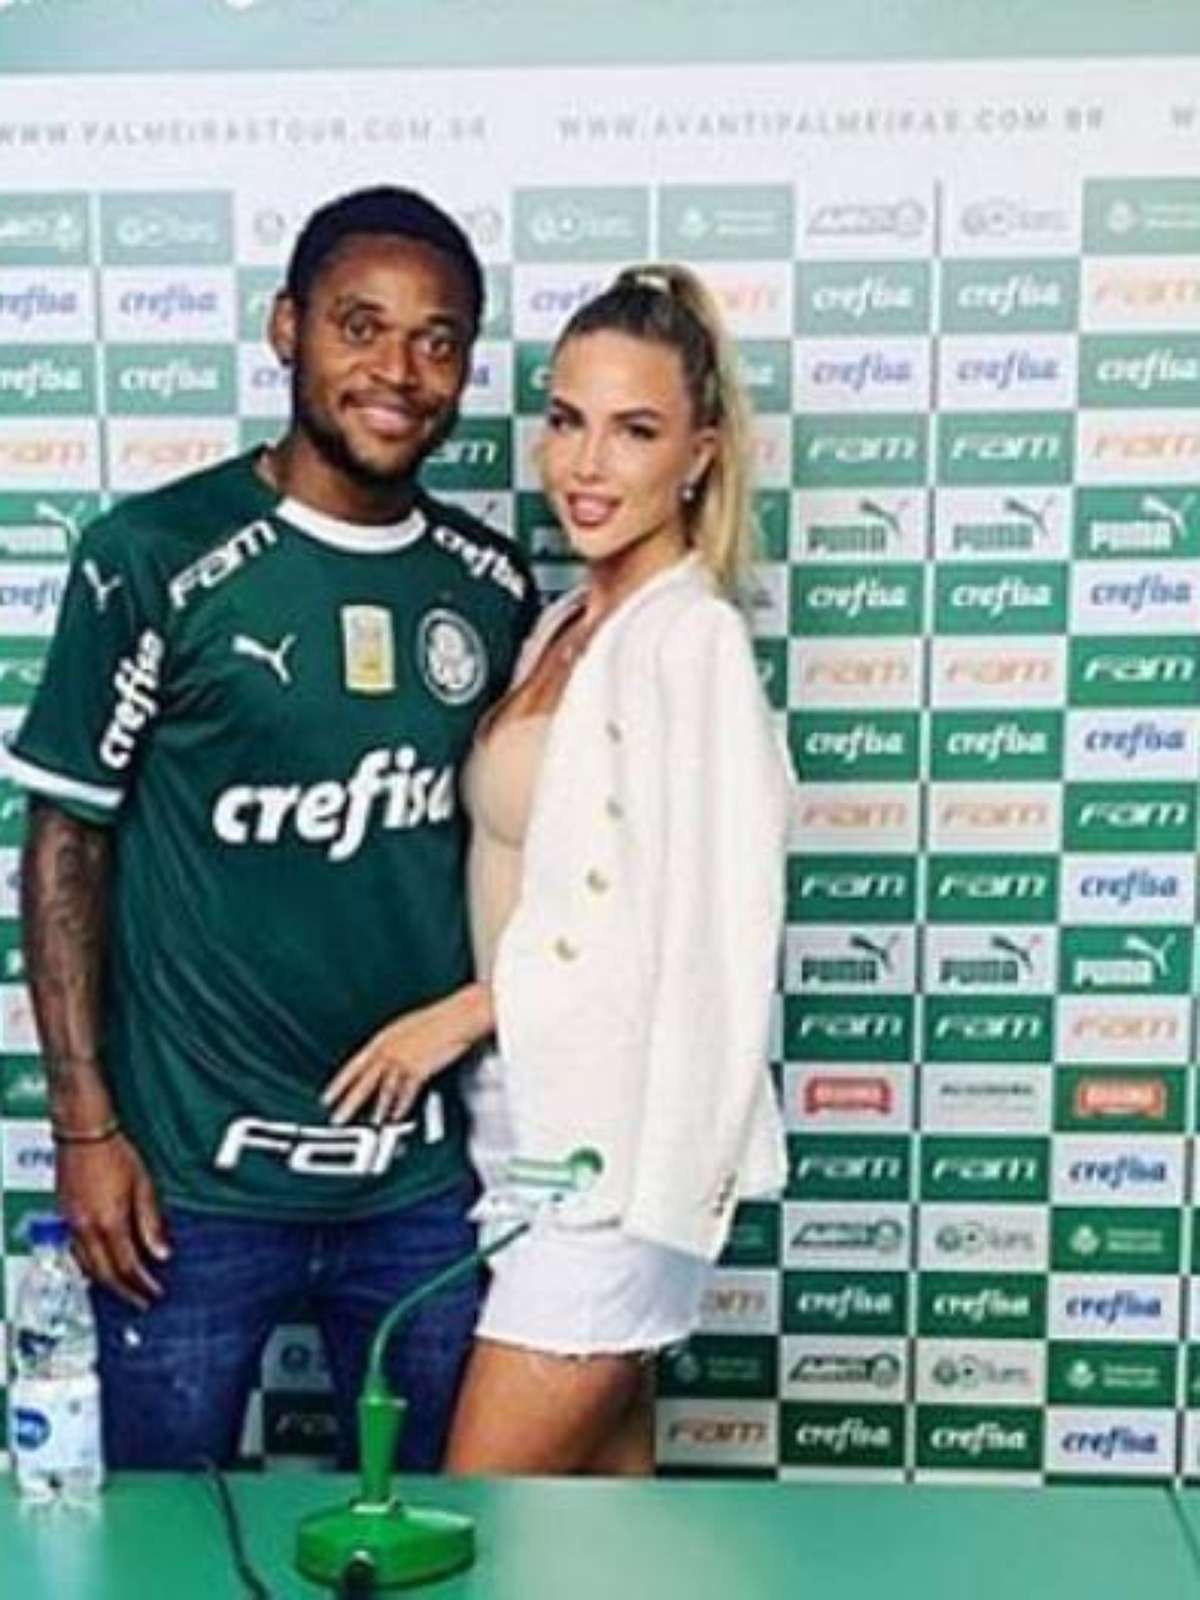 Luiz Adriano faz contrato com Palmeiras até os 36 anos; veja os números da  carreira